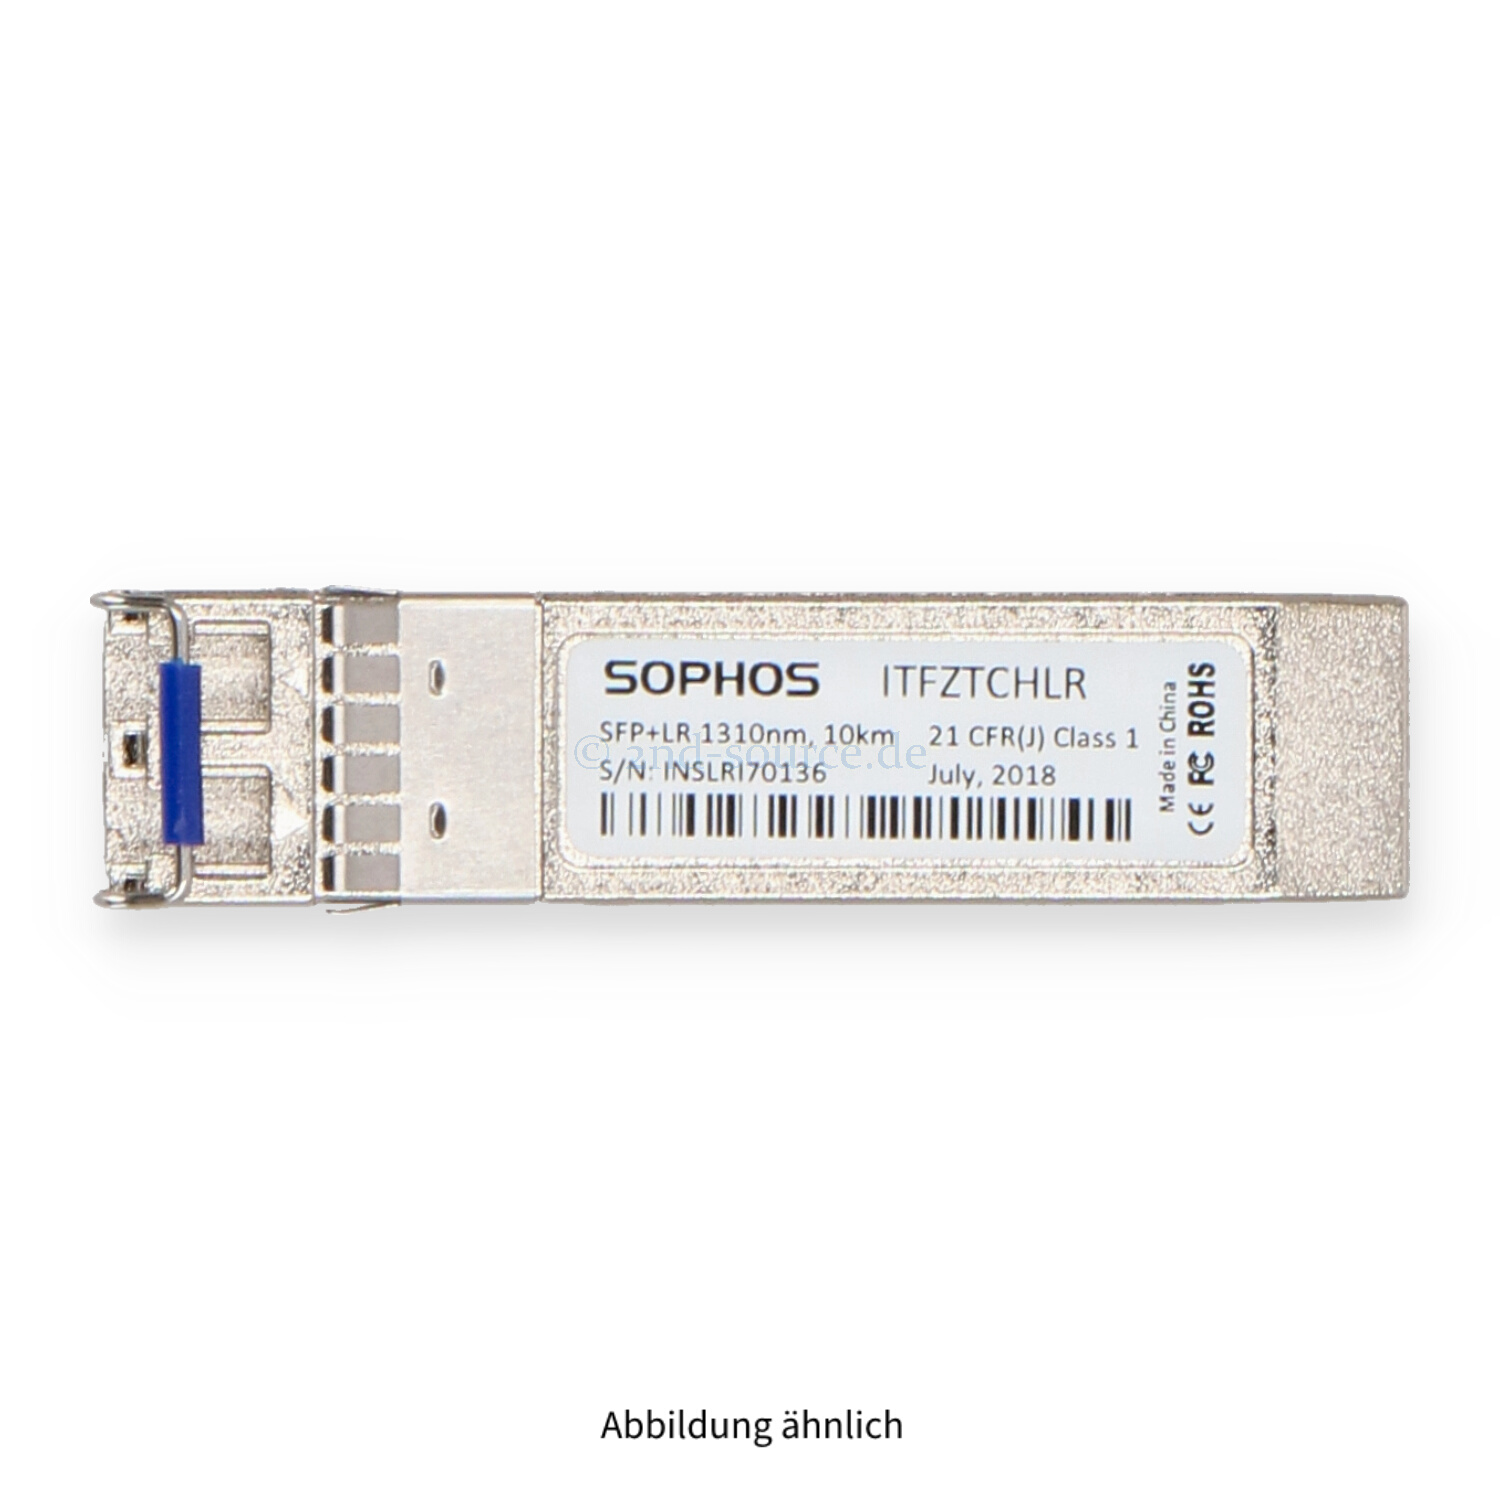 Sophos 10GBase-LR Longwave SFP+ Transceiver Module ITFZTCHLR